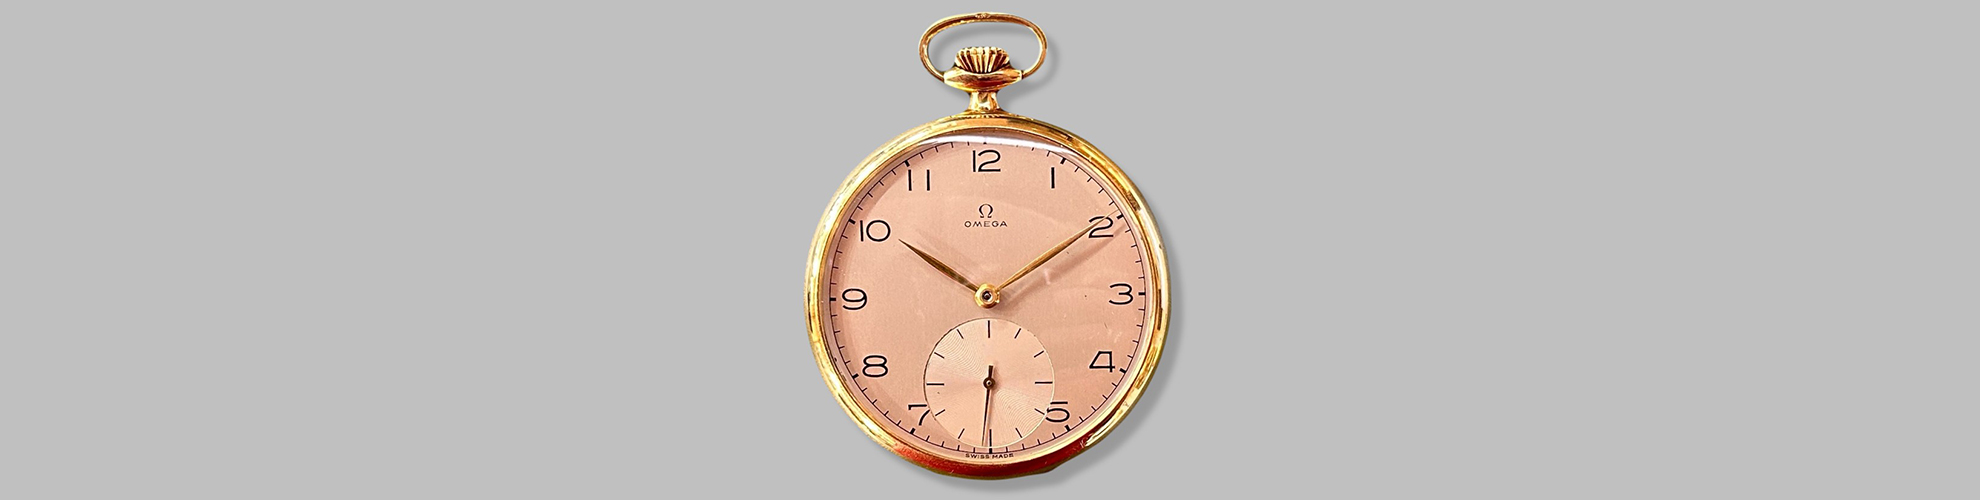 Eine goldene Taschenuhr von Omega mit einem pinkfarbenen Zifferblatt.